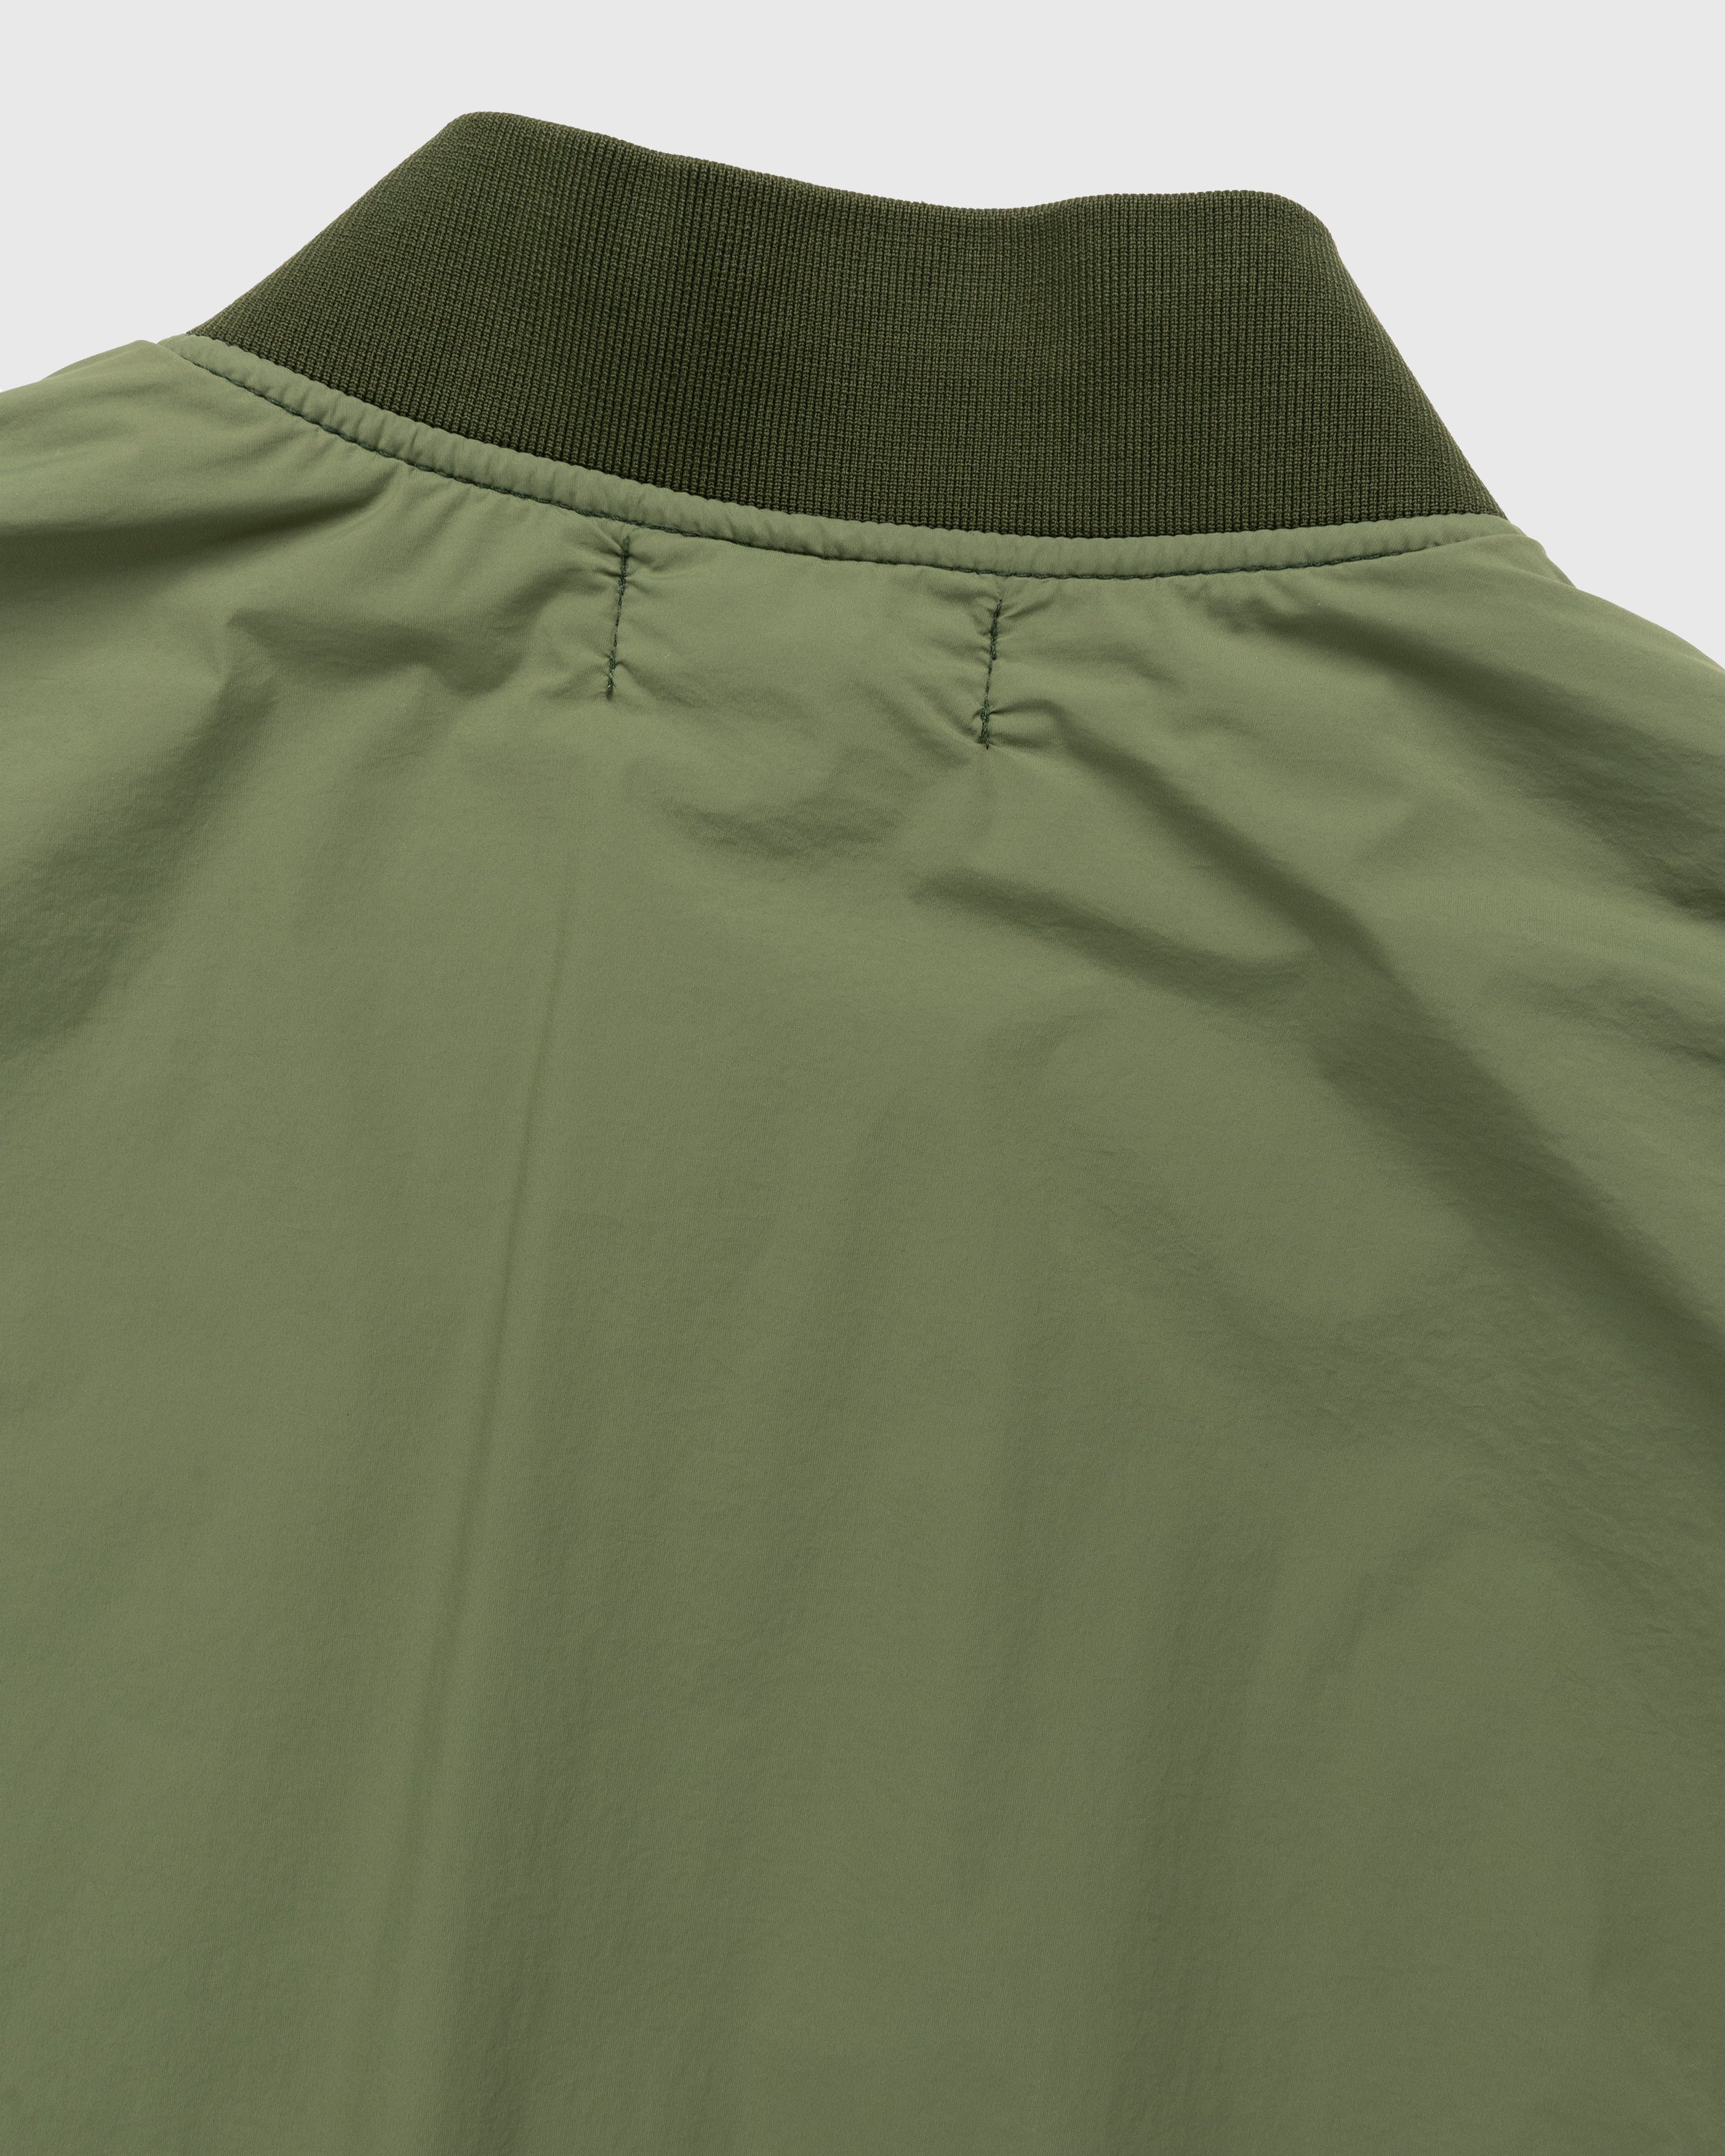 Stone Island - 41331 Nylon Bomber Jacket Olive - Clothing - Green - Image 5